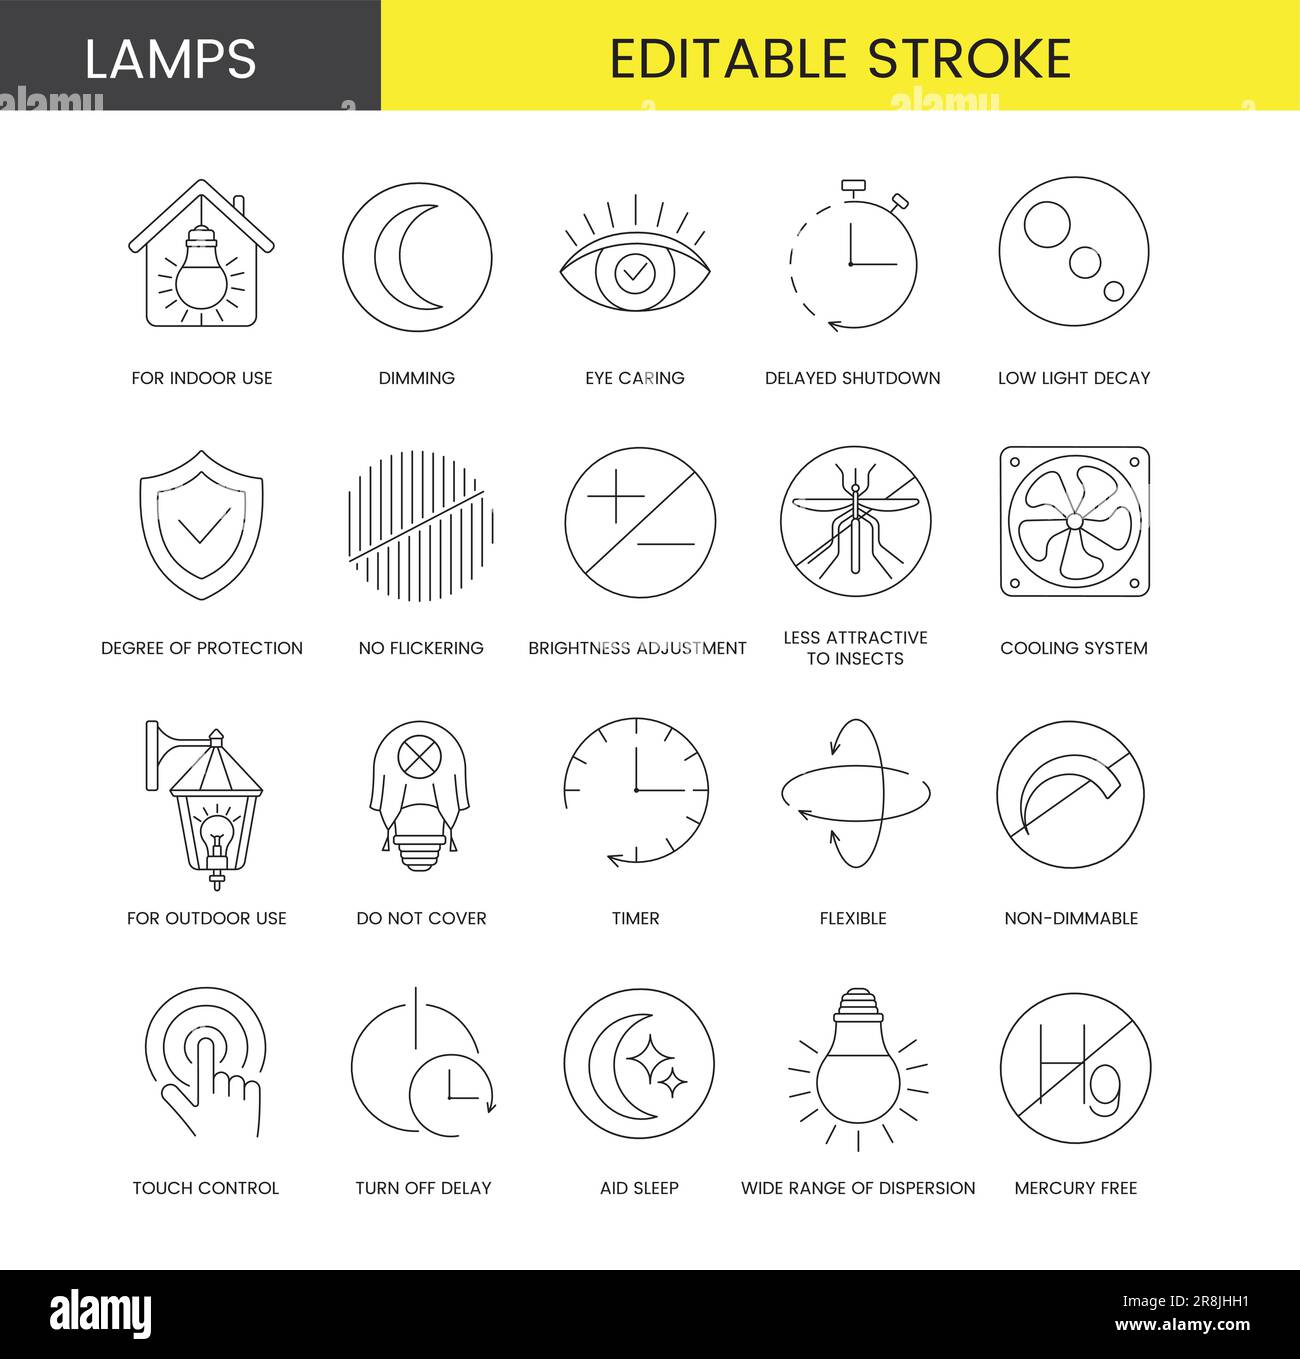 Set di icone di linea in Vector per l'imballaggio della lampada, illustrazione delle specifiche tecniche, spegnimento ritardato e cura degli occhi, per uso interno e regolazione dell'intensità luminosa, gradi Illustrazione Vettoriale